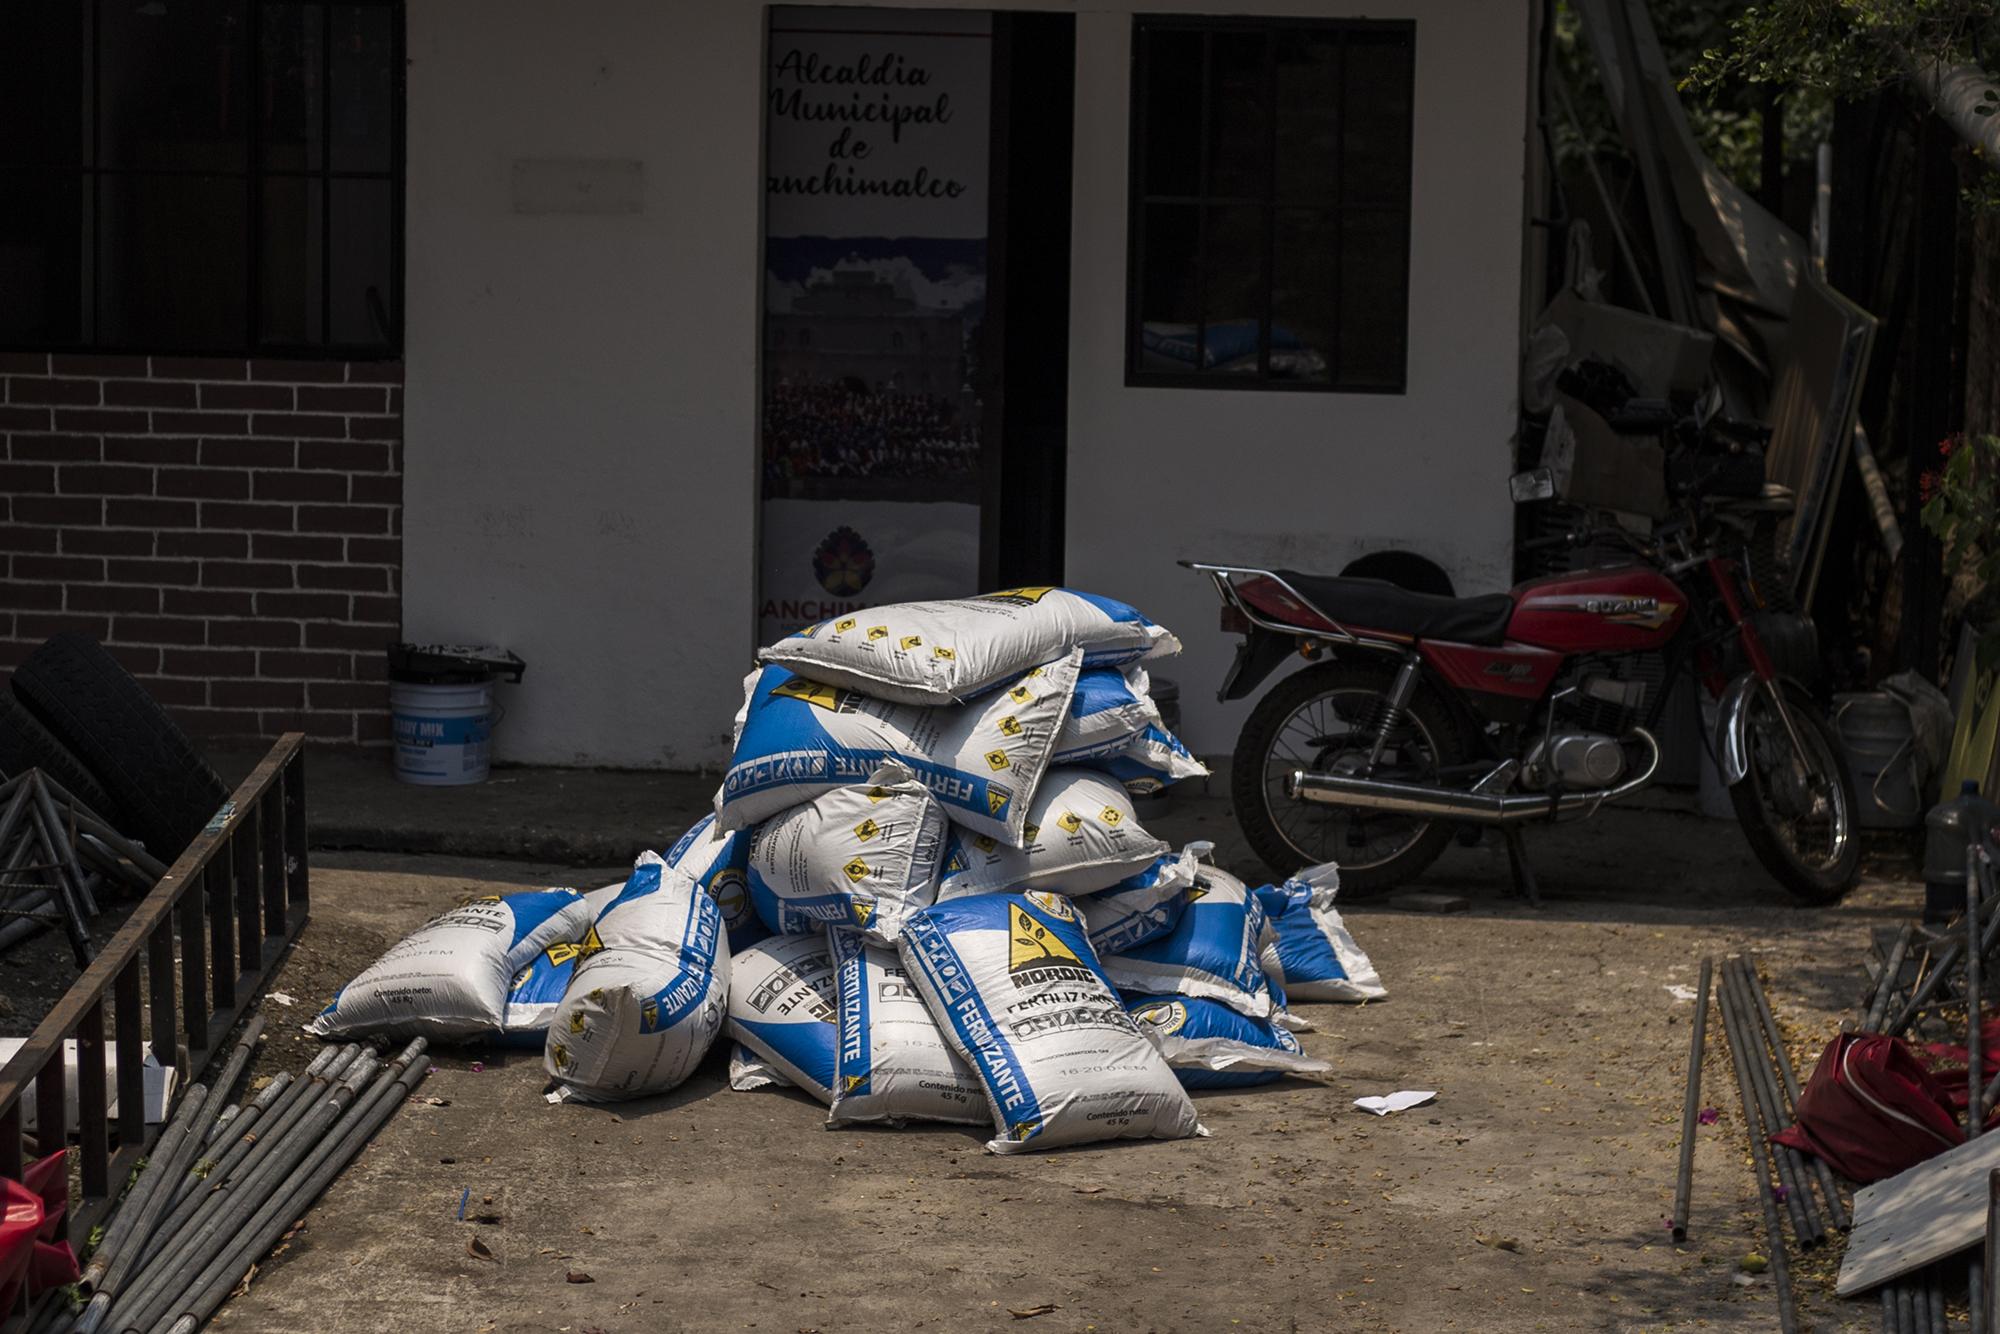 Alrededor de 20 sacos de fertilizante se encontraban frente a la sala de reuniones de la Alcaldía Municipal de Panchimalco, el 17 de abril. Estos sacos fueron trasladados hasta la alcaldía por órdenes del alcalde Meléndez, tras interceptar un camión del Ministerio de Agricultura. Foto de El Faro: Víctor Peña. 